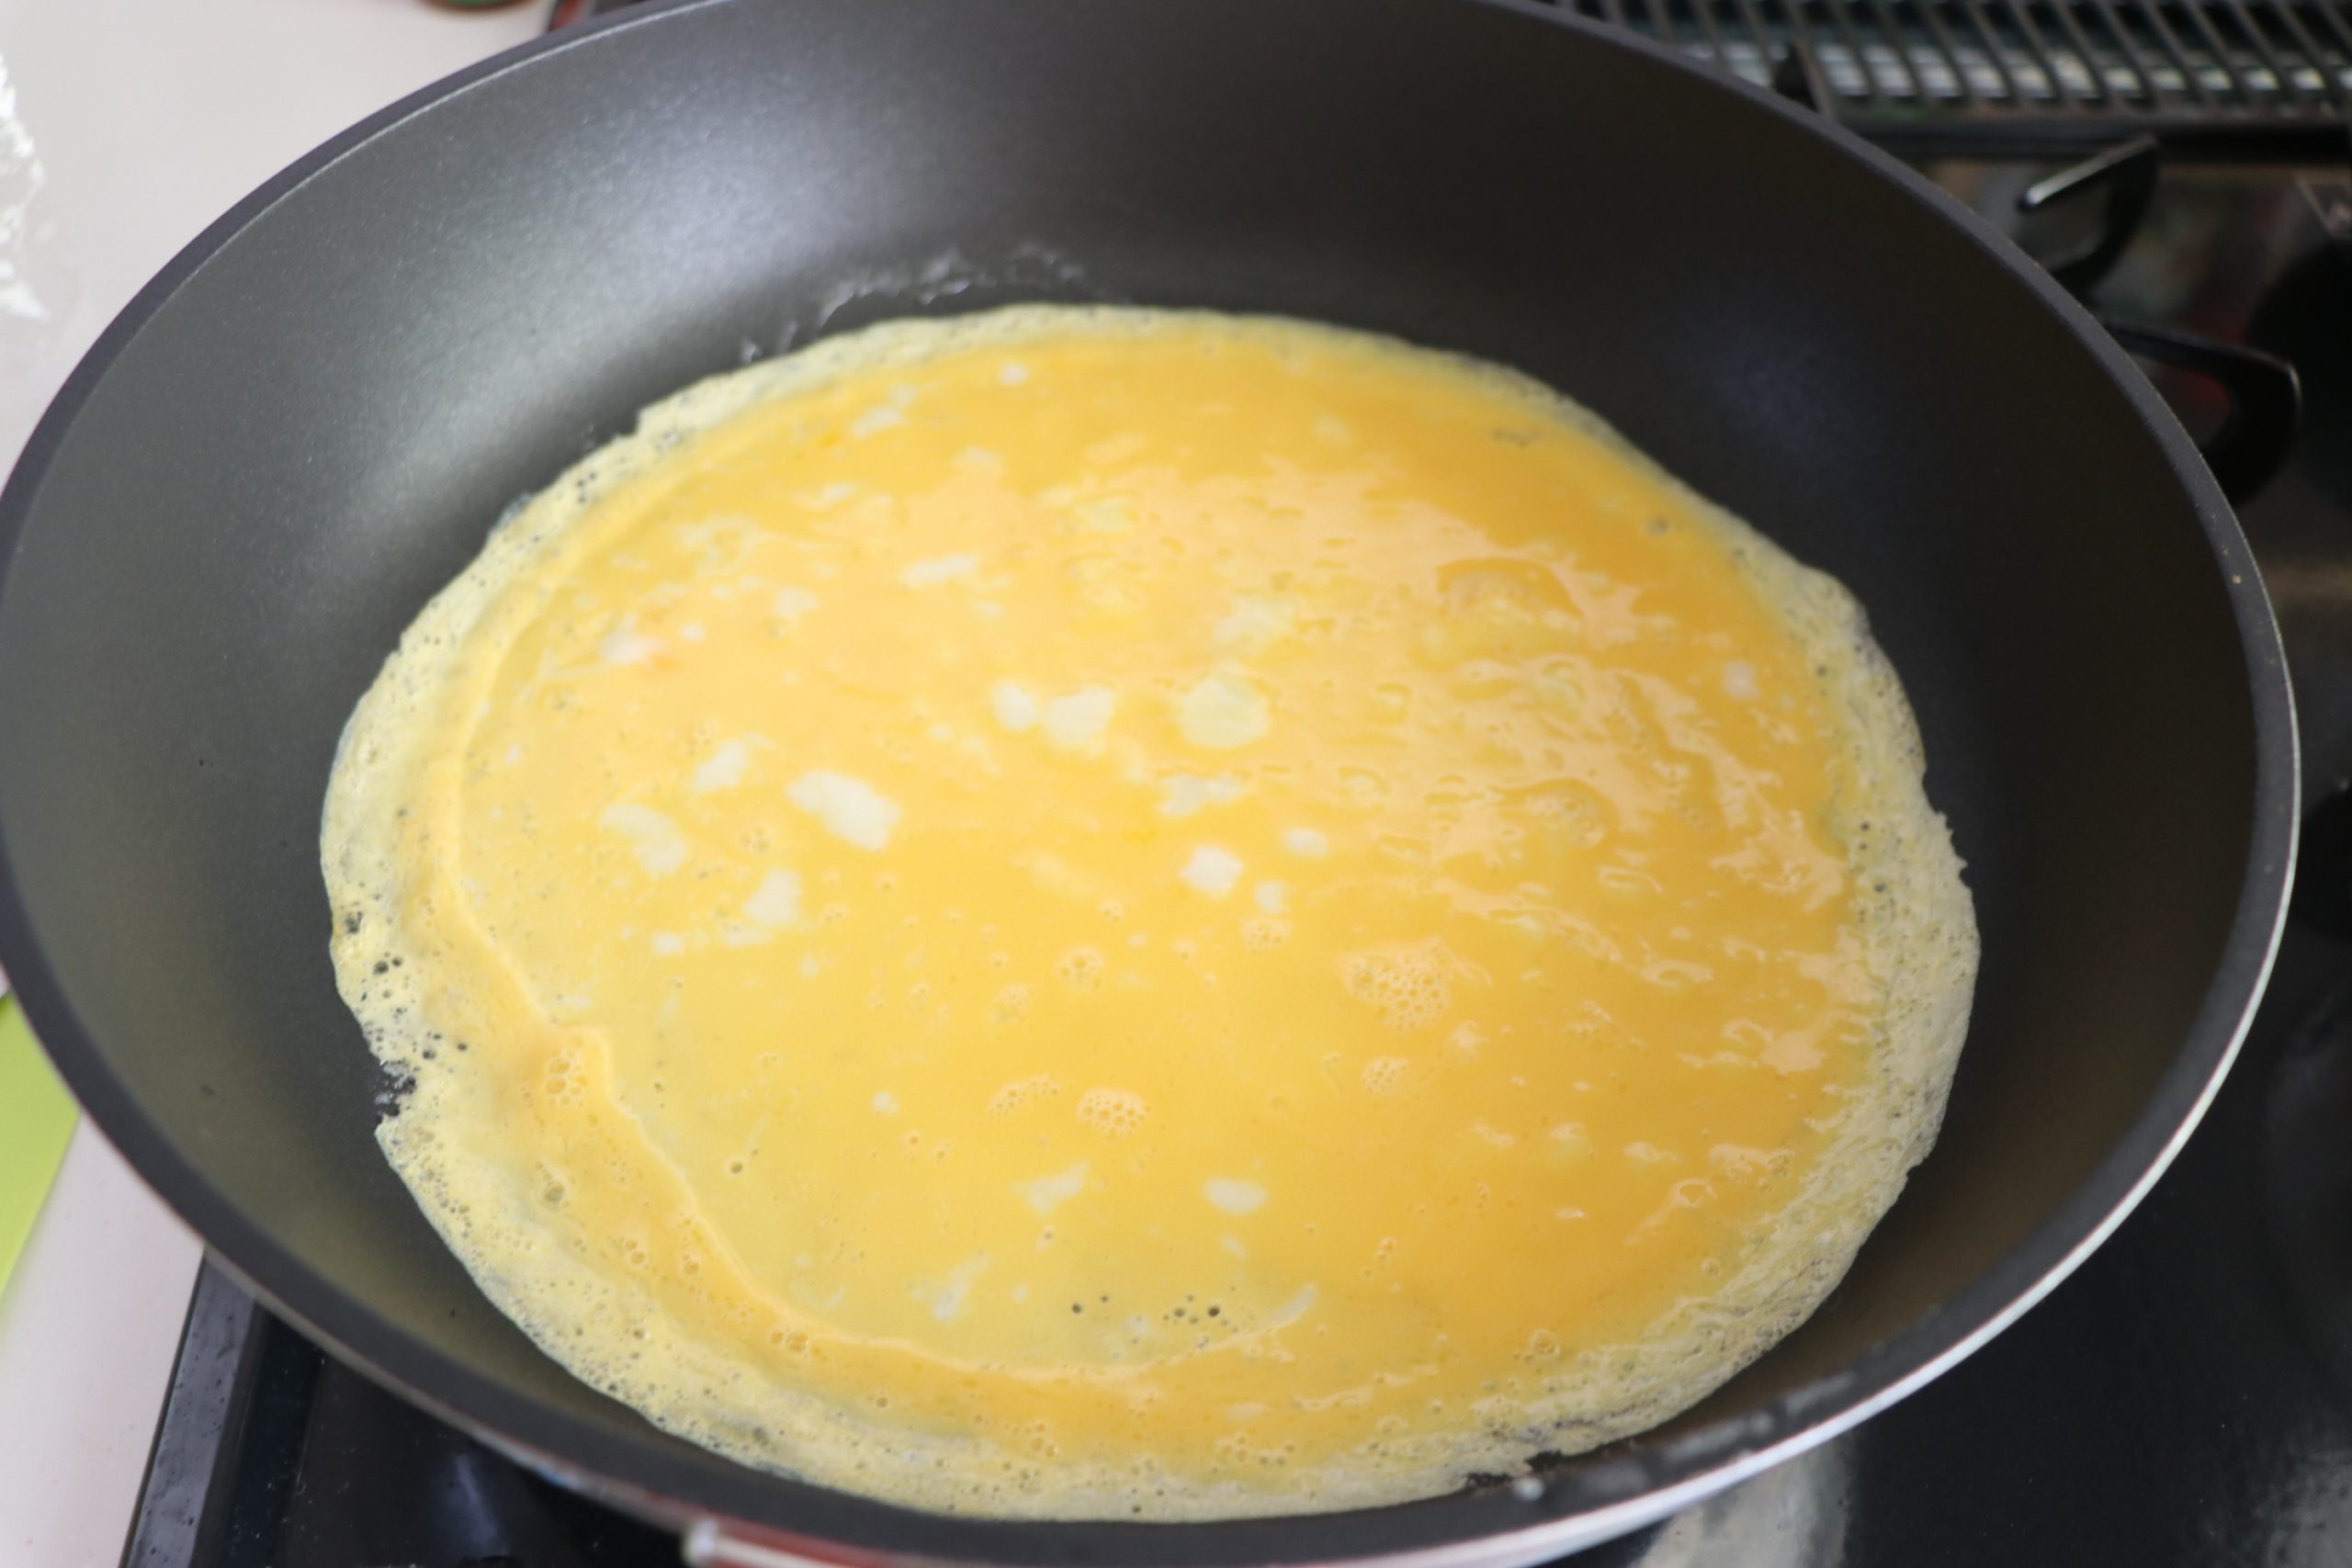 【たまご】
たまごをしっかり溶く。
直径20cm程度のフライパンを熱し、バターを溶かす。
そこに溶きたまごを流し入れ、焼く。